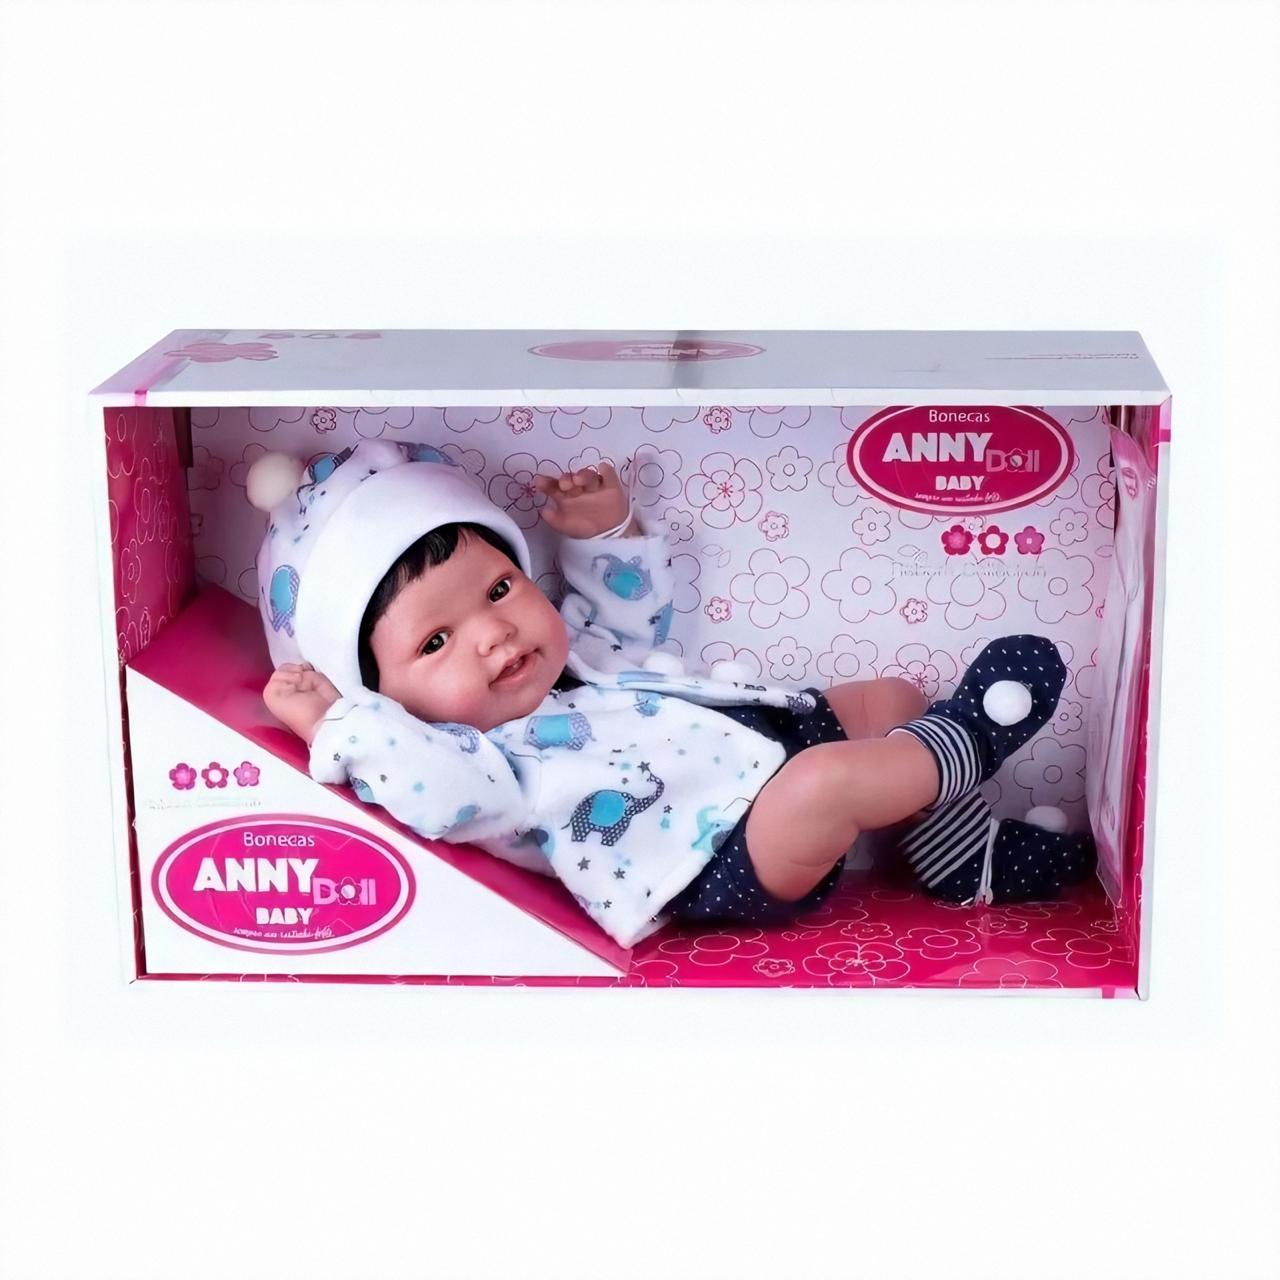 Boneca Reborn Anny Doll Baby - Cotiplás 2440